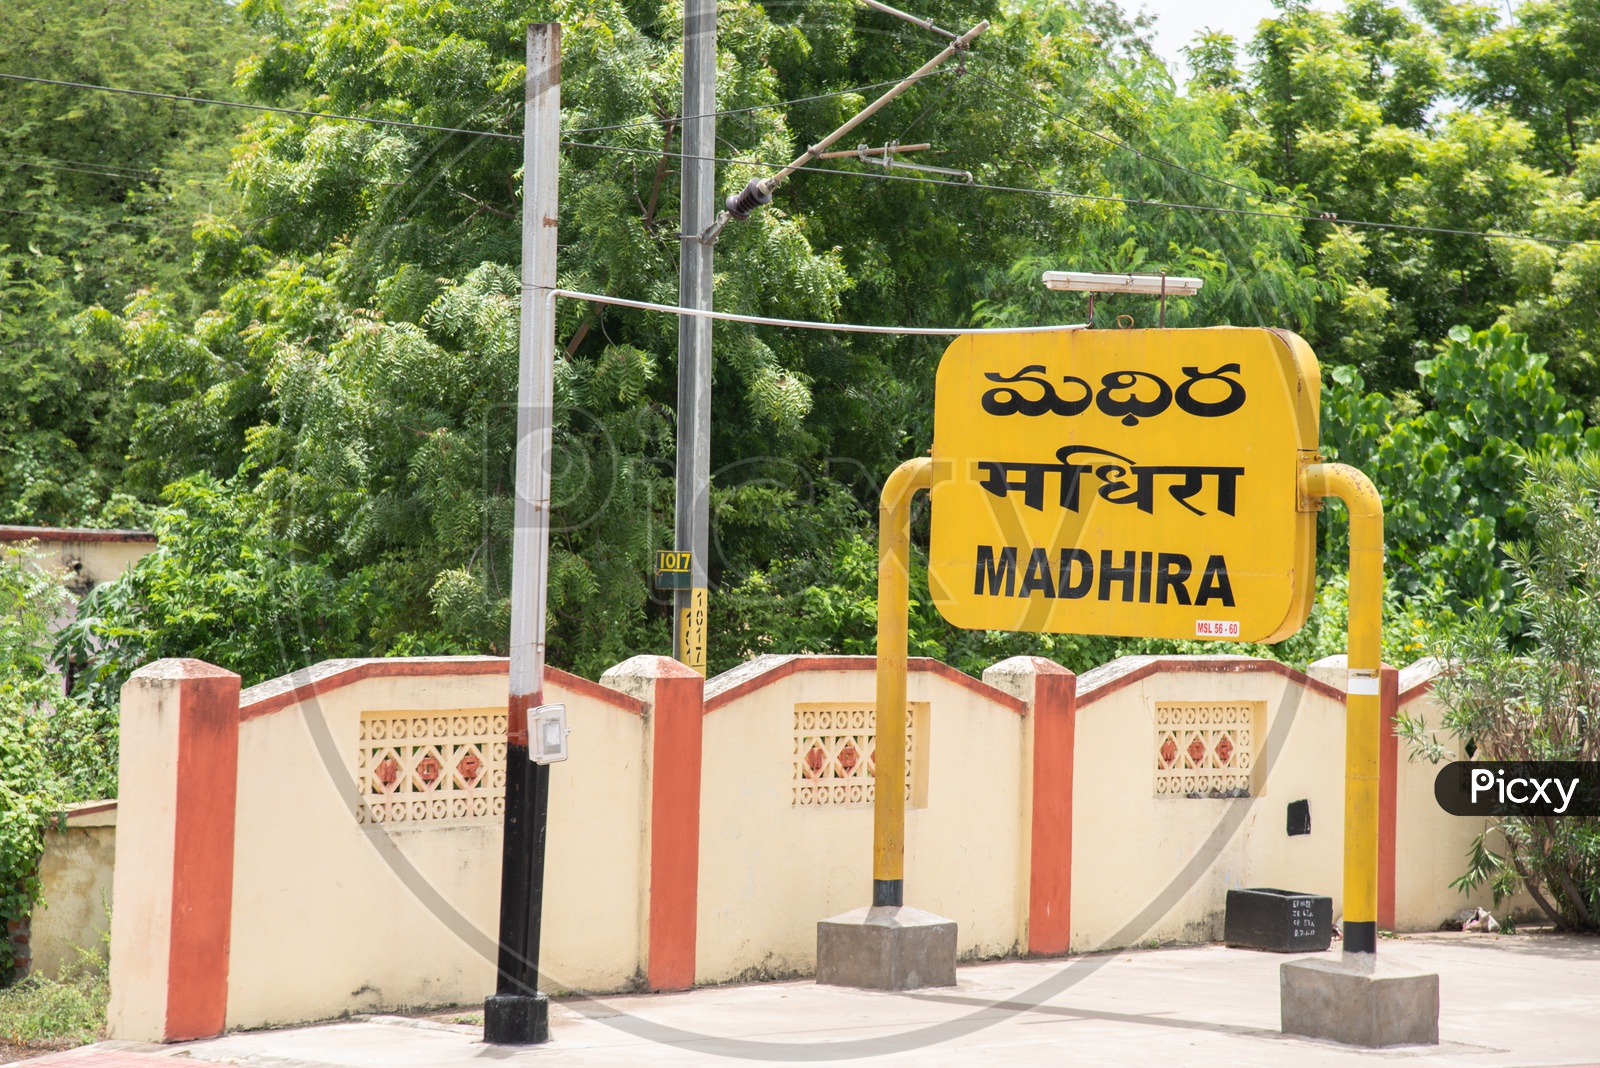 Madhira railway station